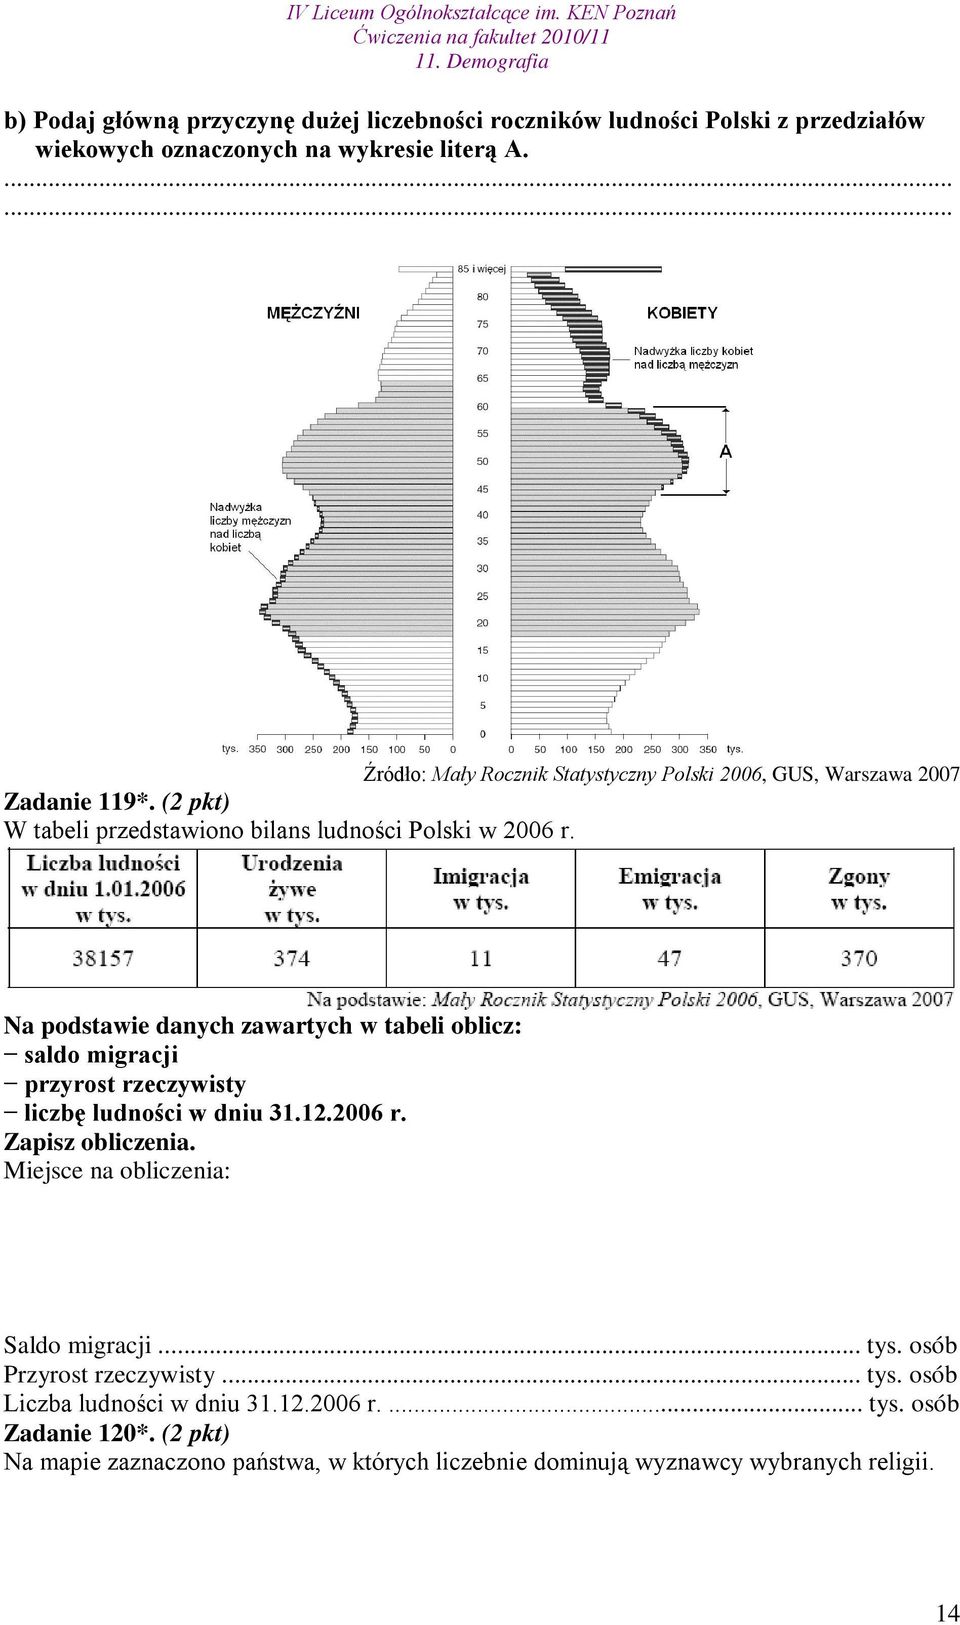 Na podstawie danych zawartych w tabeli oblicz: saldo migracji przyrost rzeczywisty liczbę ludności w dniu 31.12.2006 r. Zapisz obliczenia.